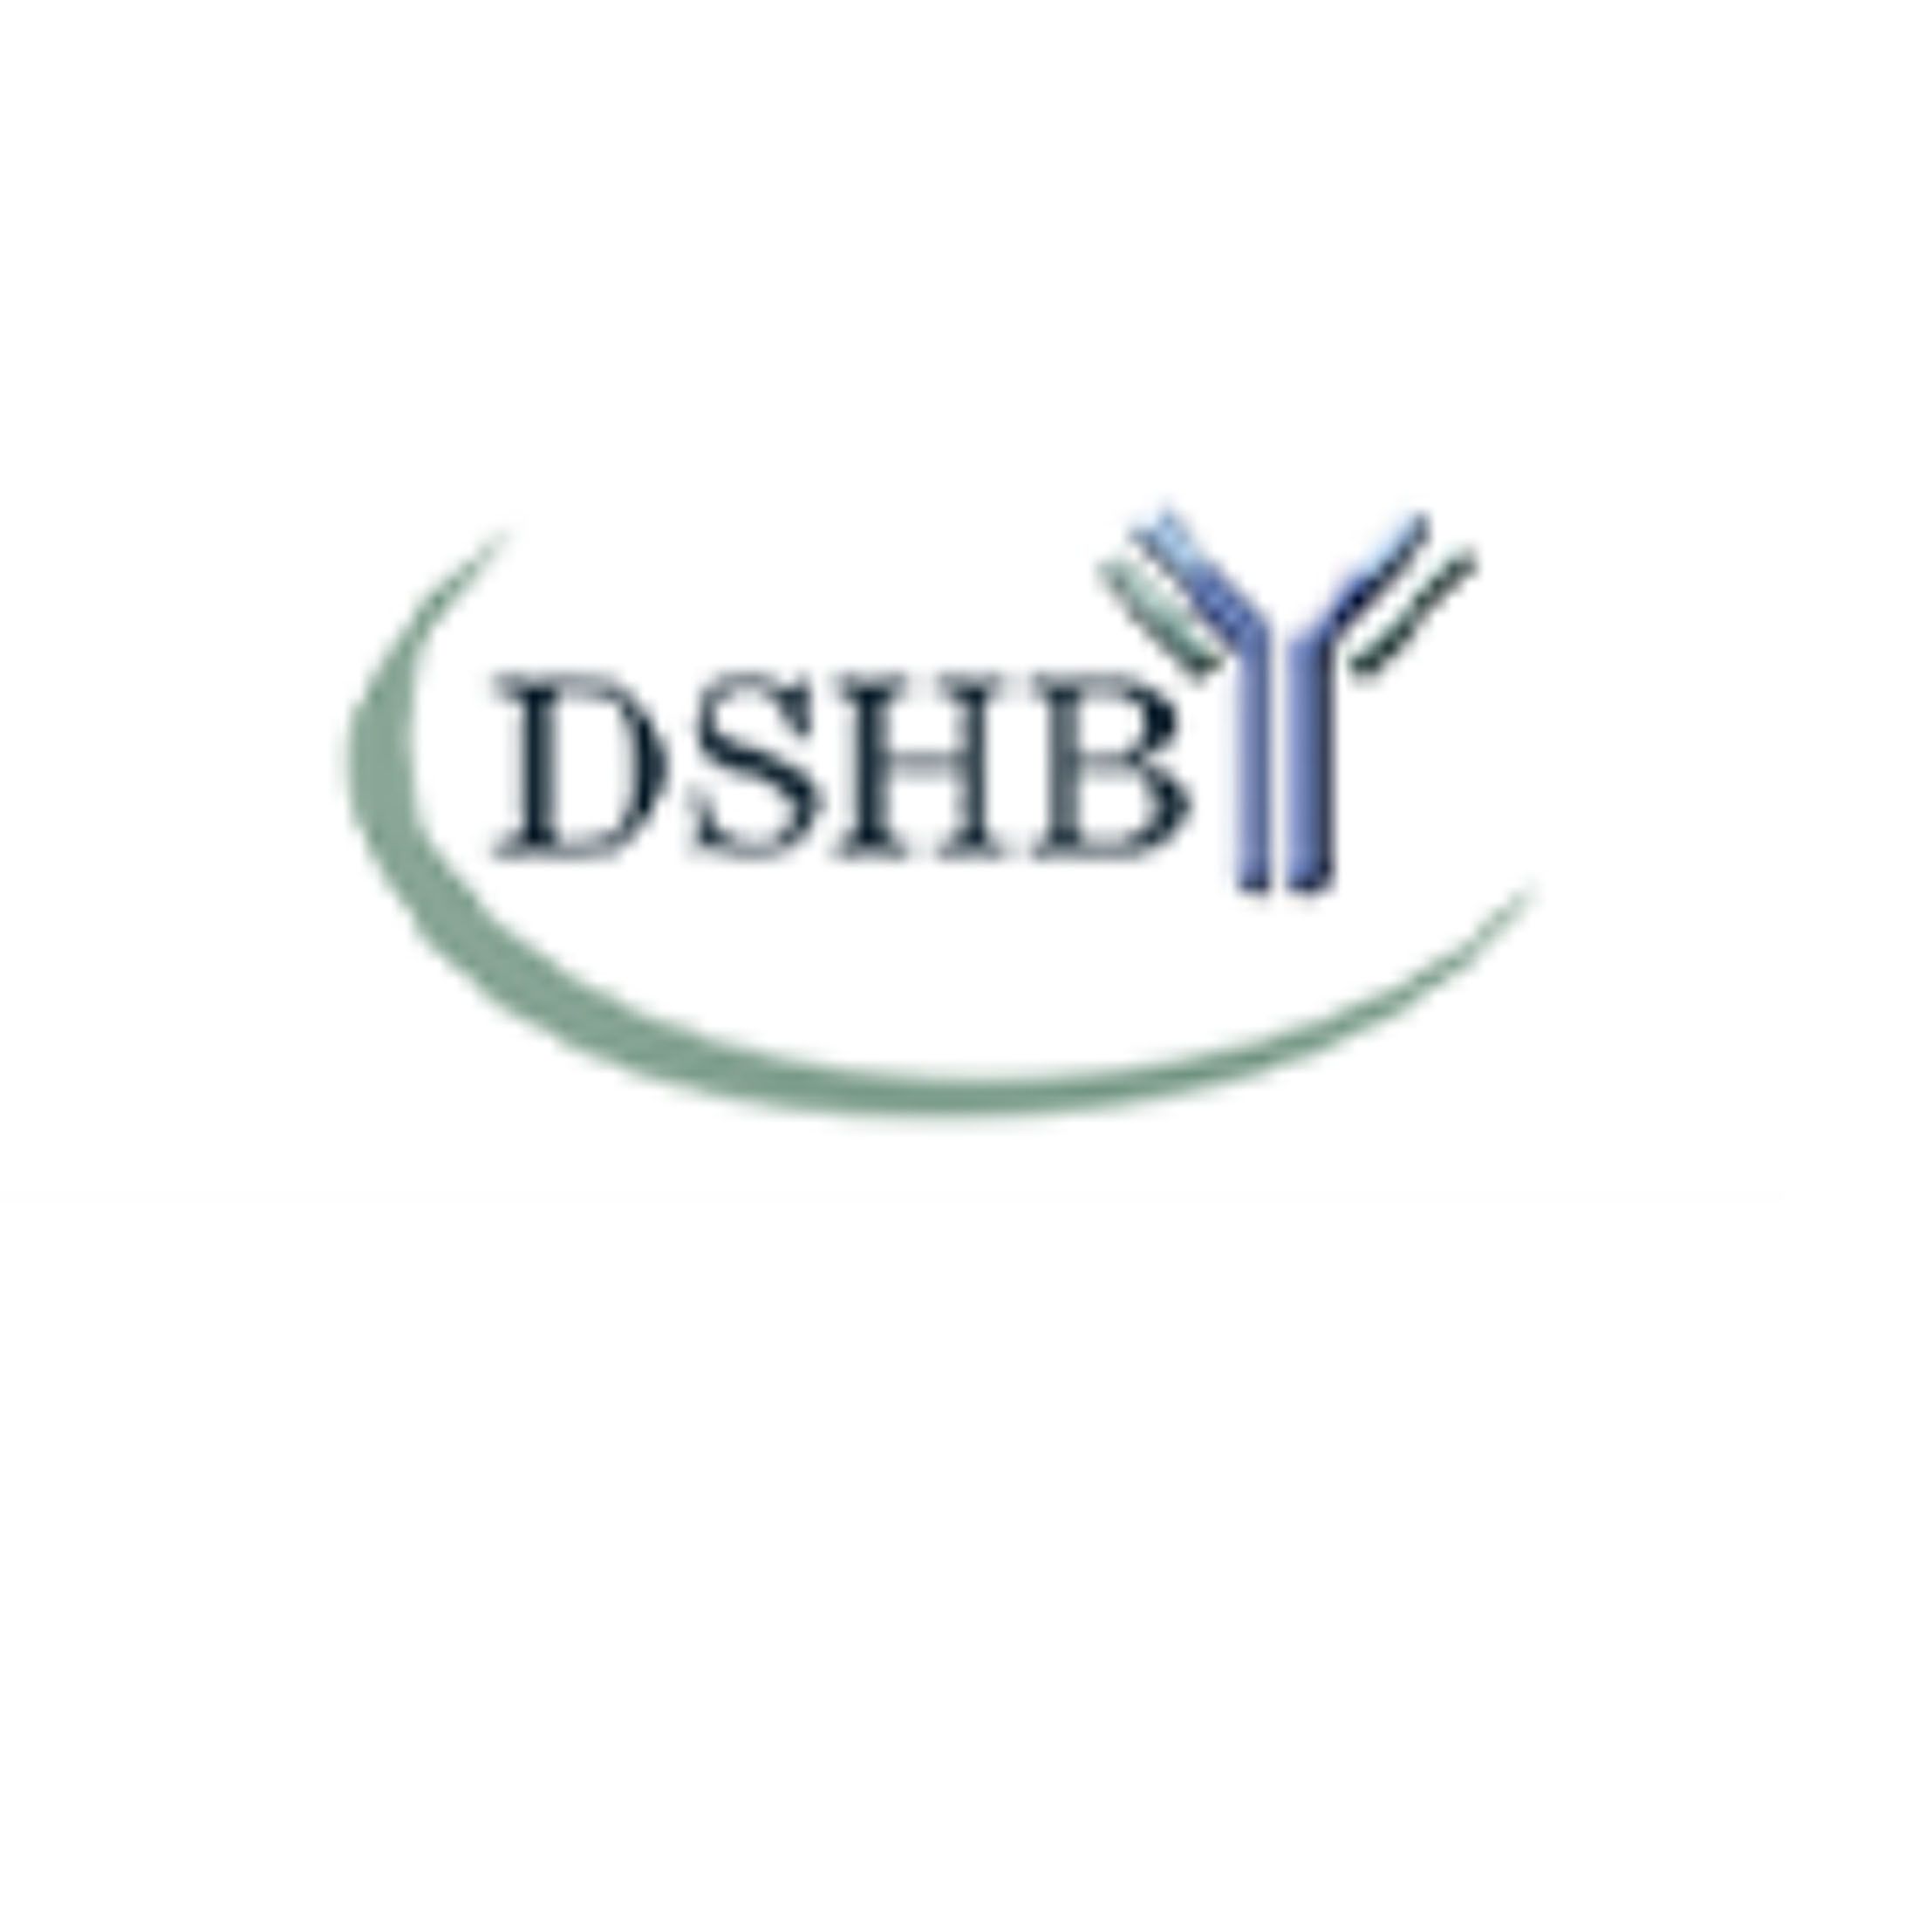 DSHB ( 美国 ) 果蝇抗体、细胞标记、粘菌、细胞骨架蛋白、肌营养不良症相关蛋白，现货